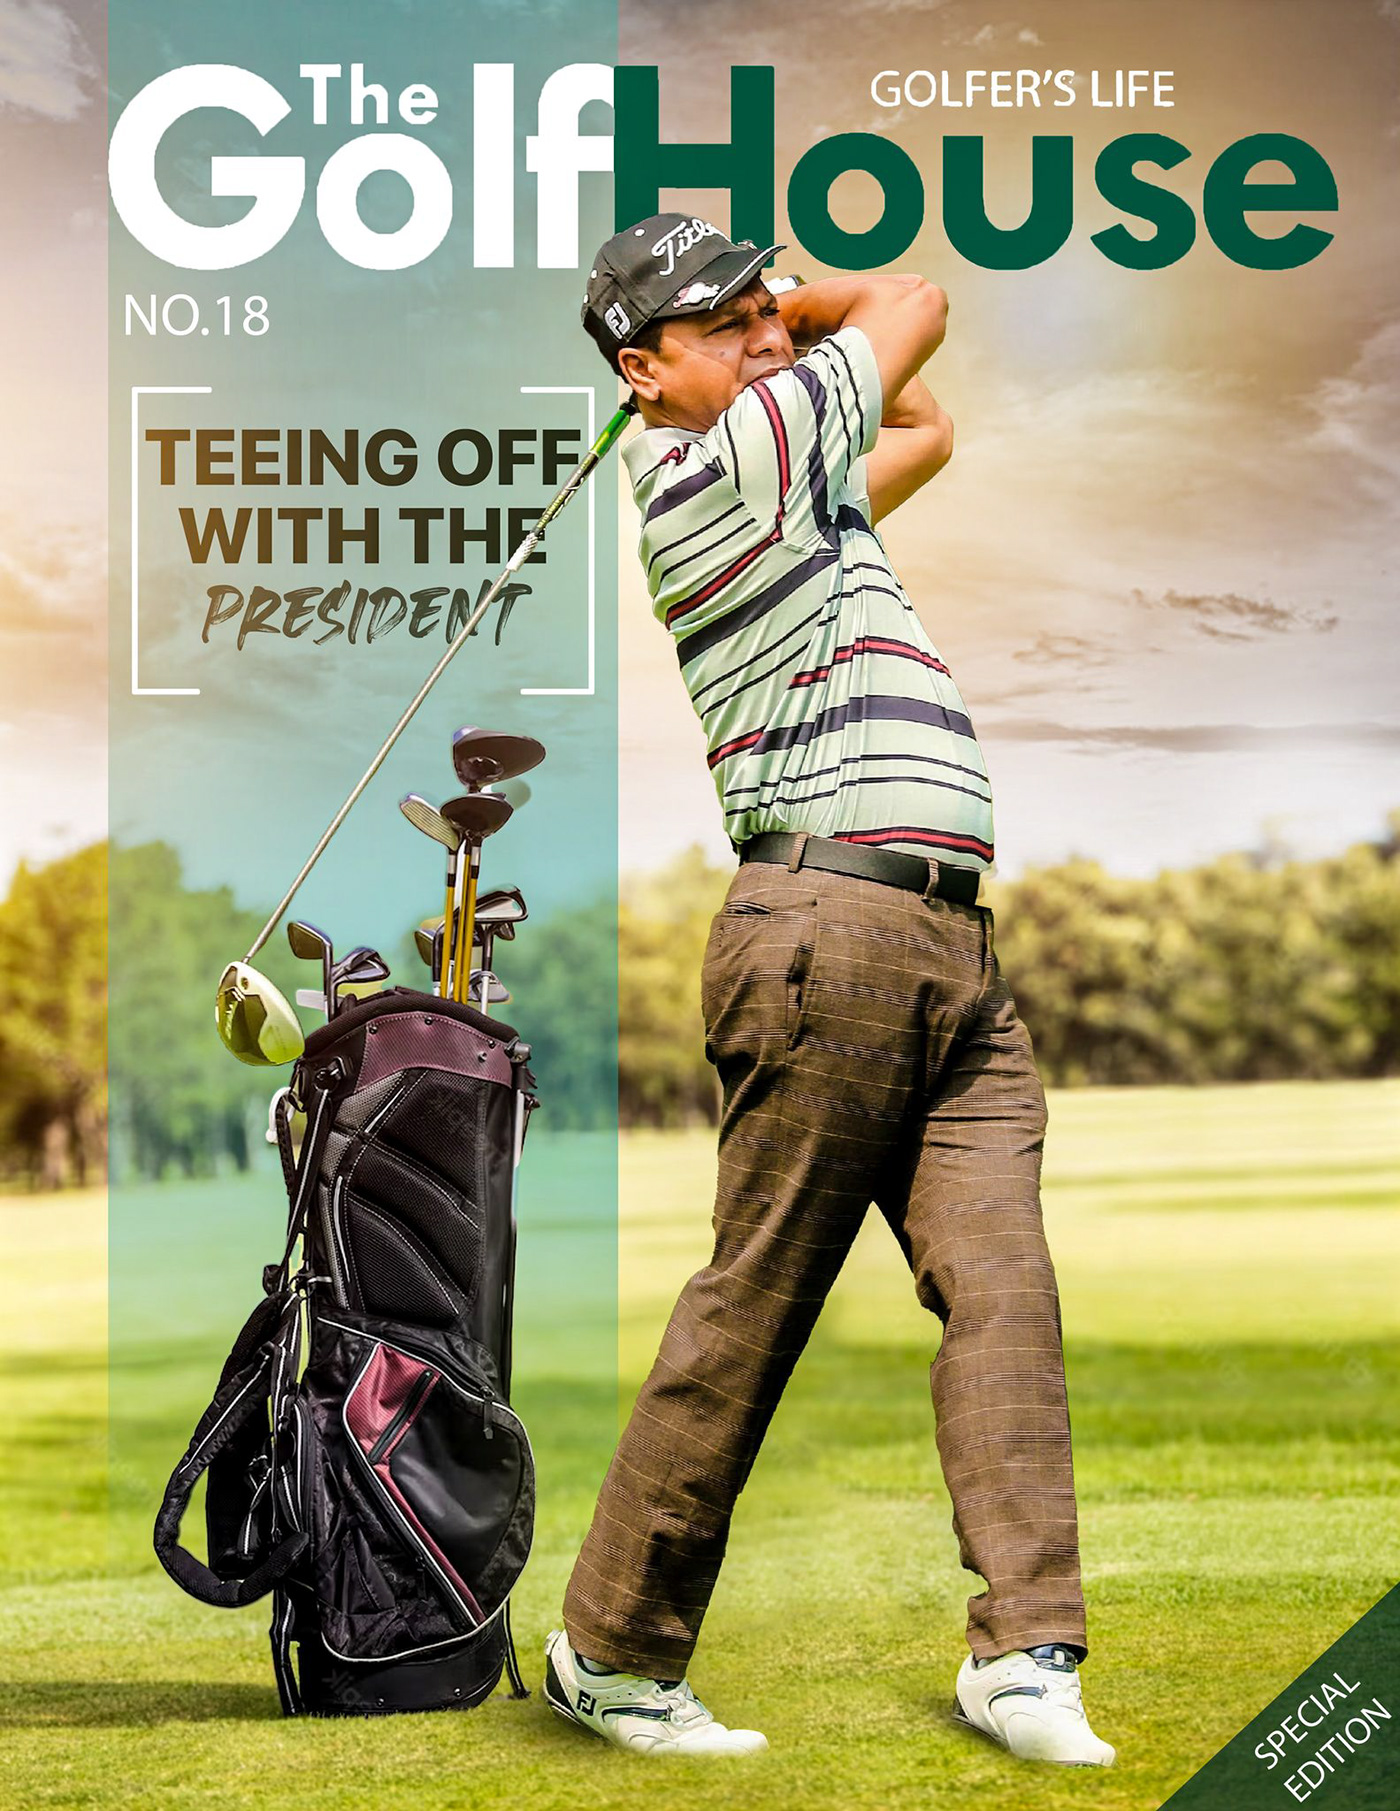 golf Layout Golfing Golfer Golf Club course magaizne